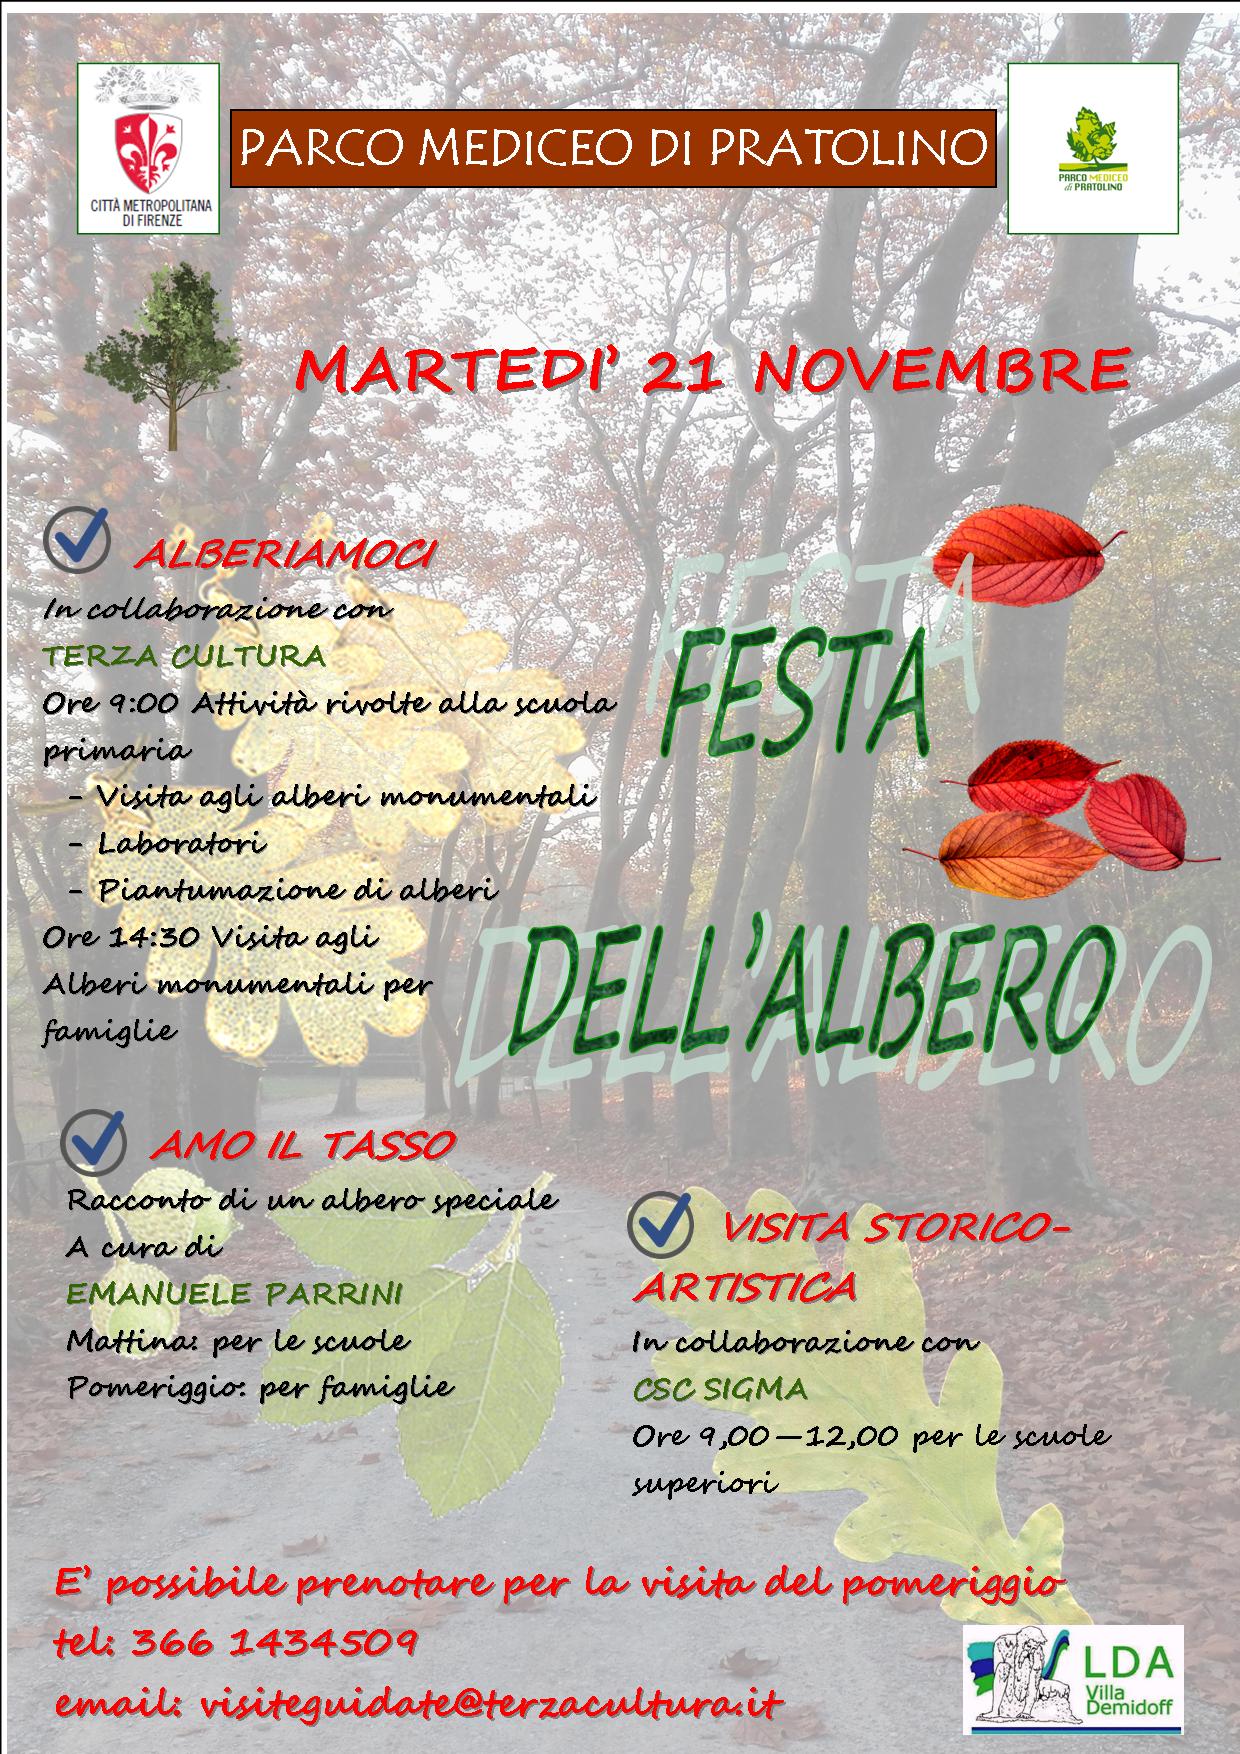 La locandina con il programma della Giornata nazionale degli alberi al Parco di Pratolino